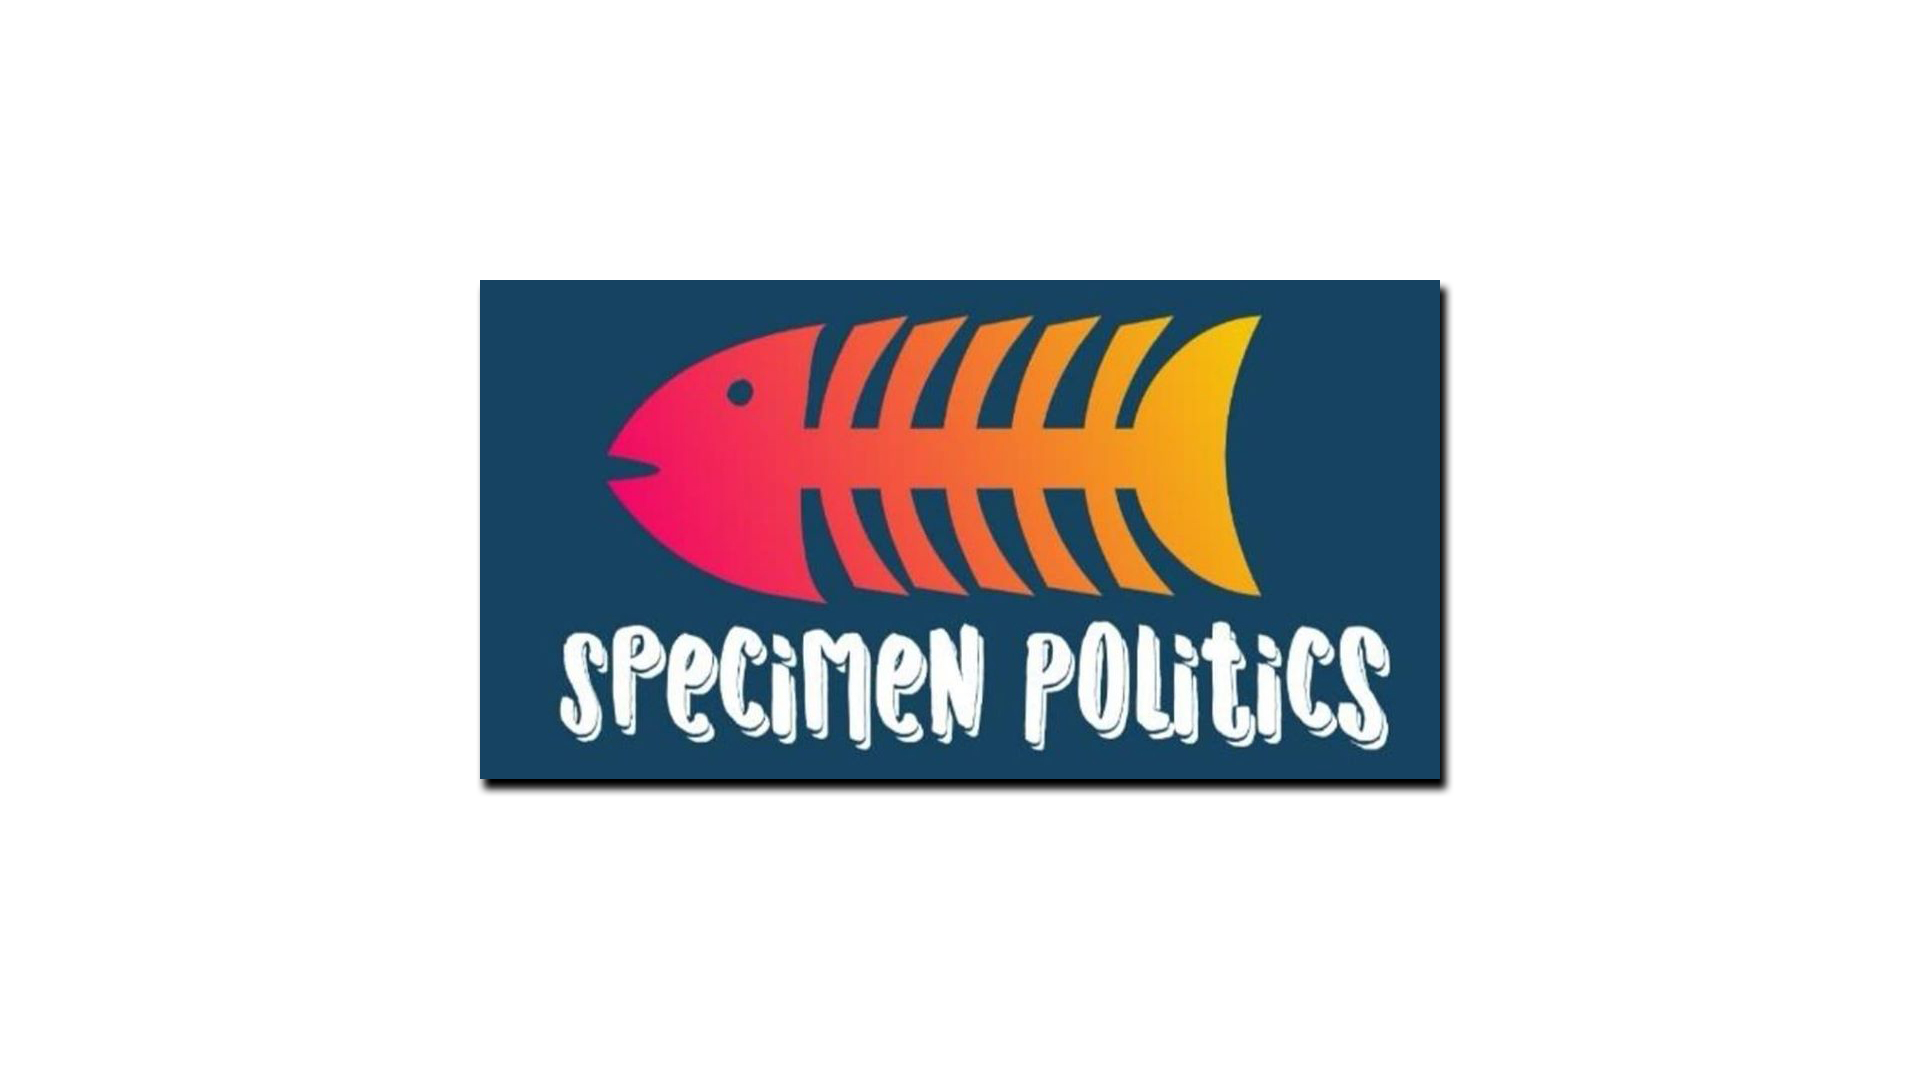 Specimen Politics